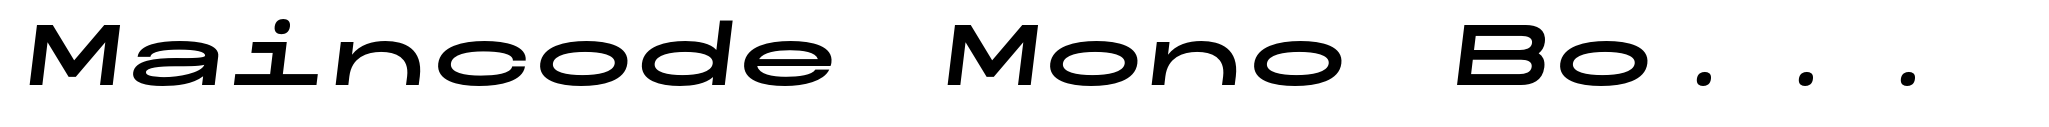 Maincode Mono Bold 200 Oblique image